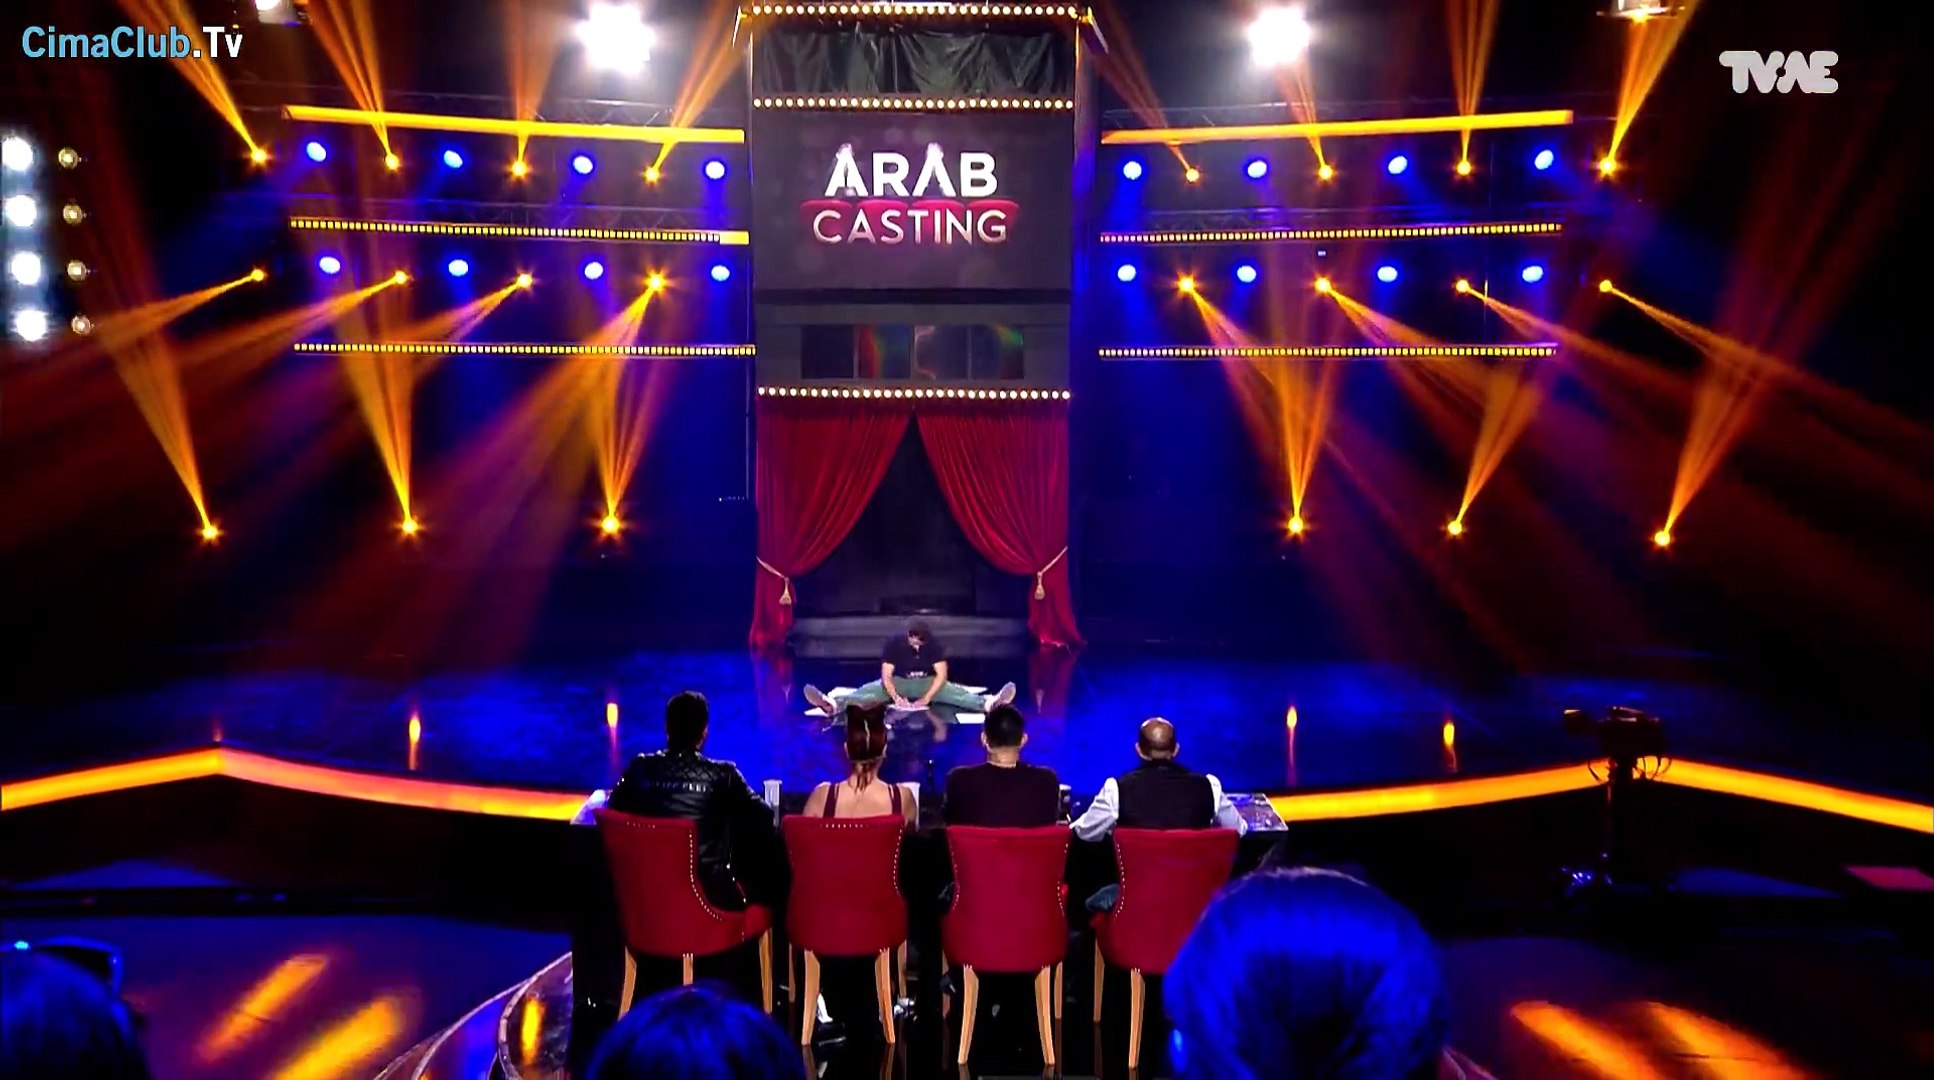 عرب كاستنج الموسم الثانى الحلقة 3 الثالثة كاملة Arab Casting - video  Dailymotion